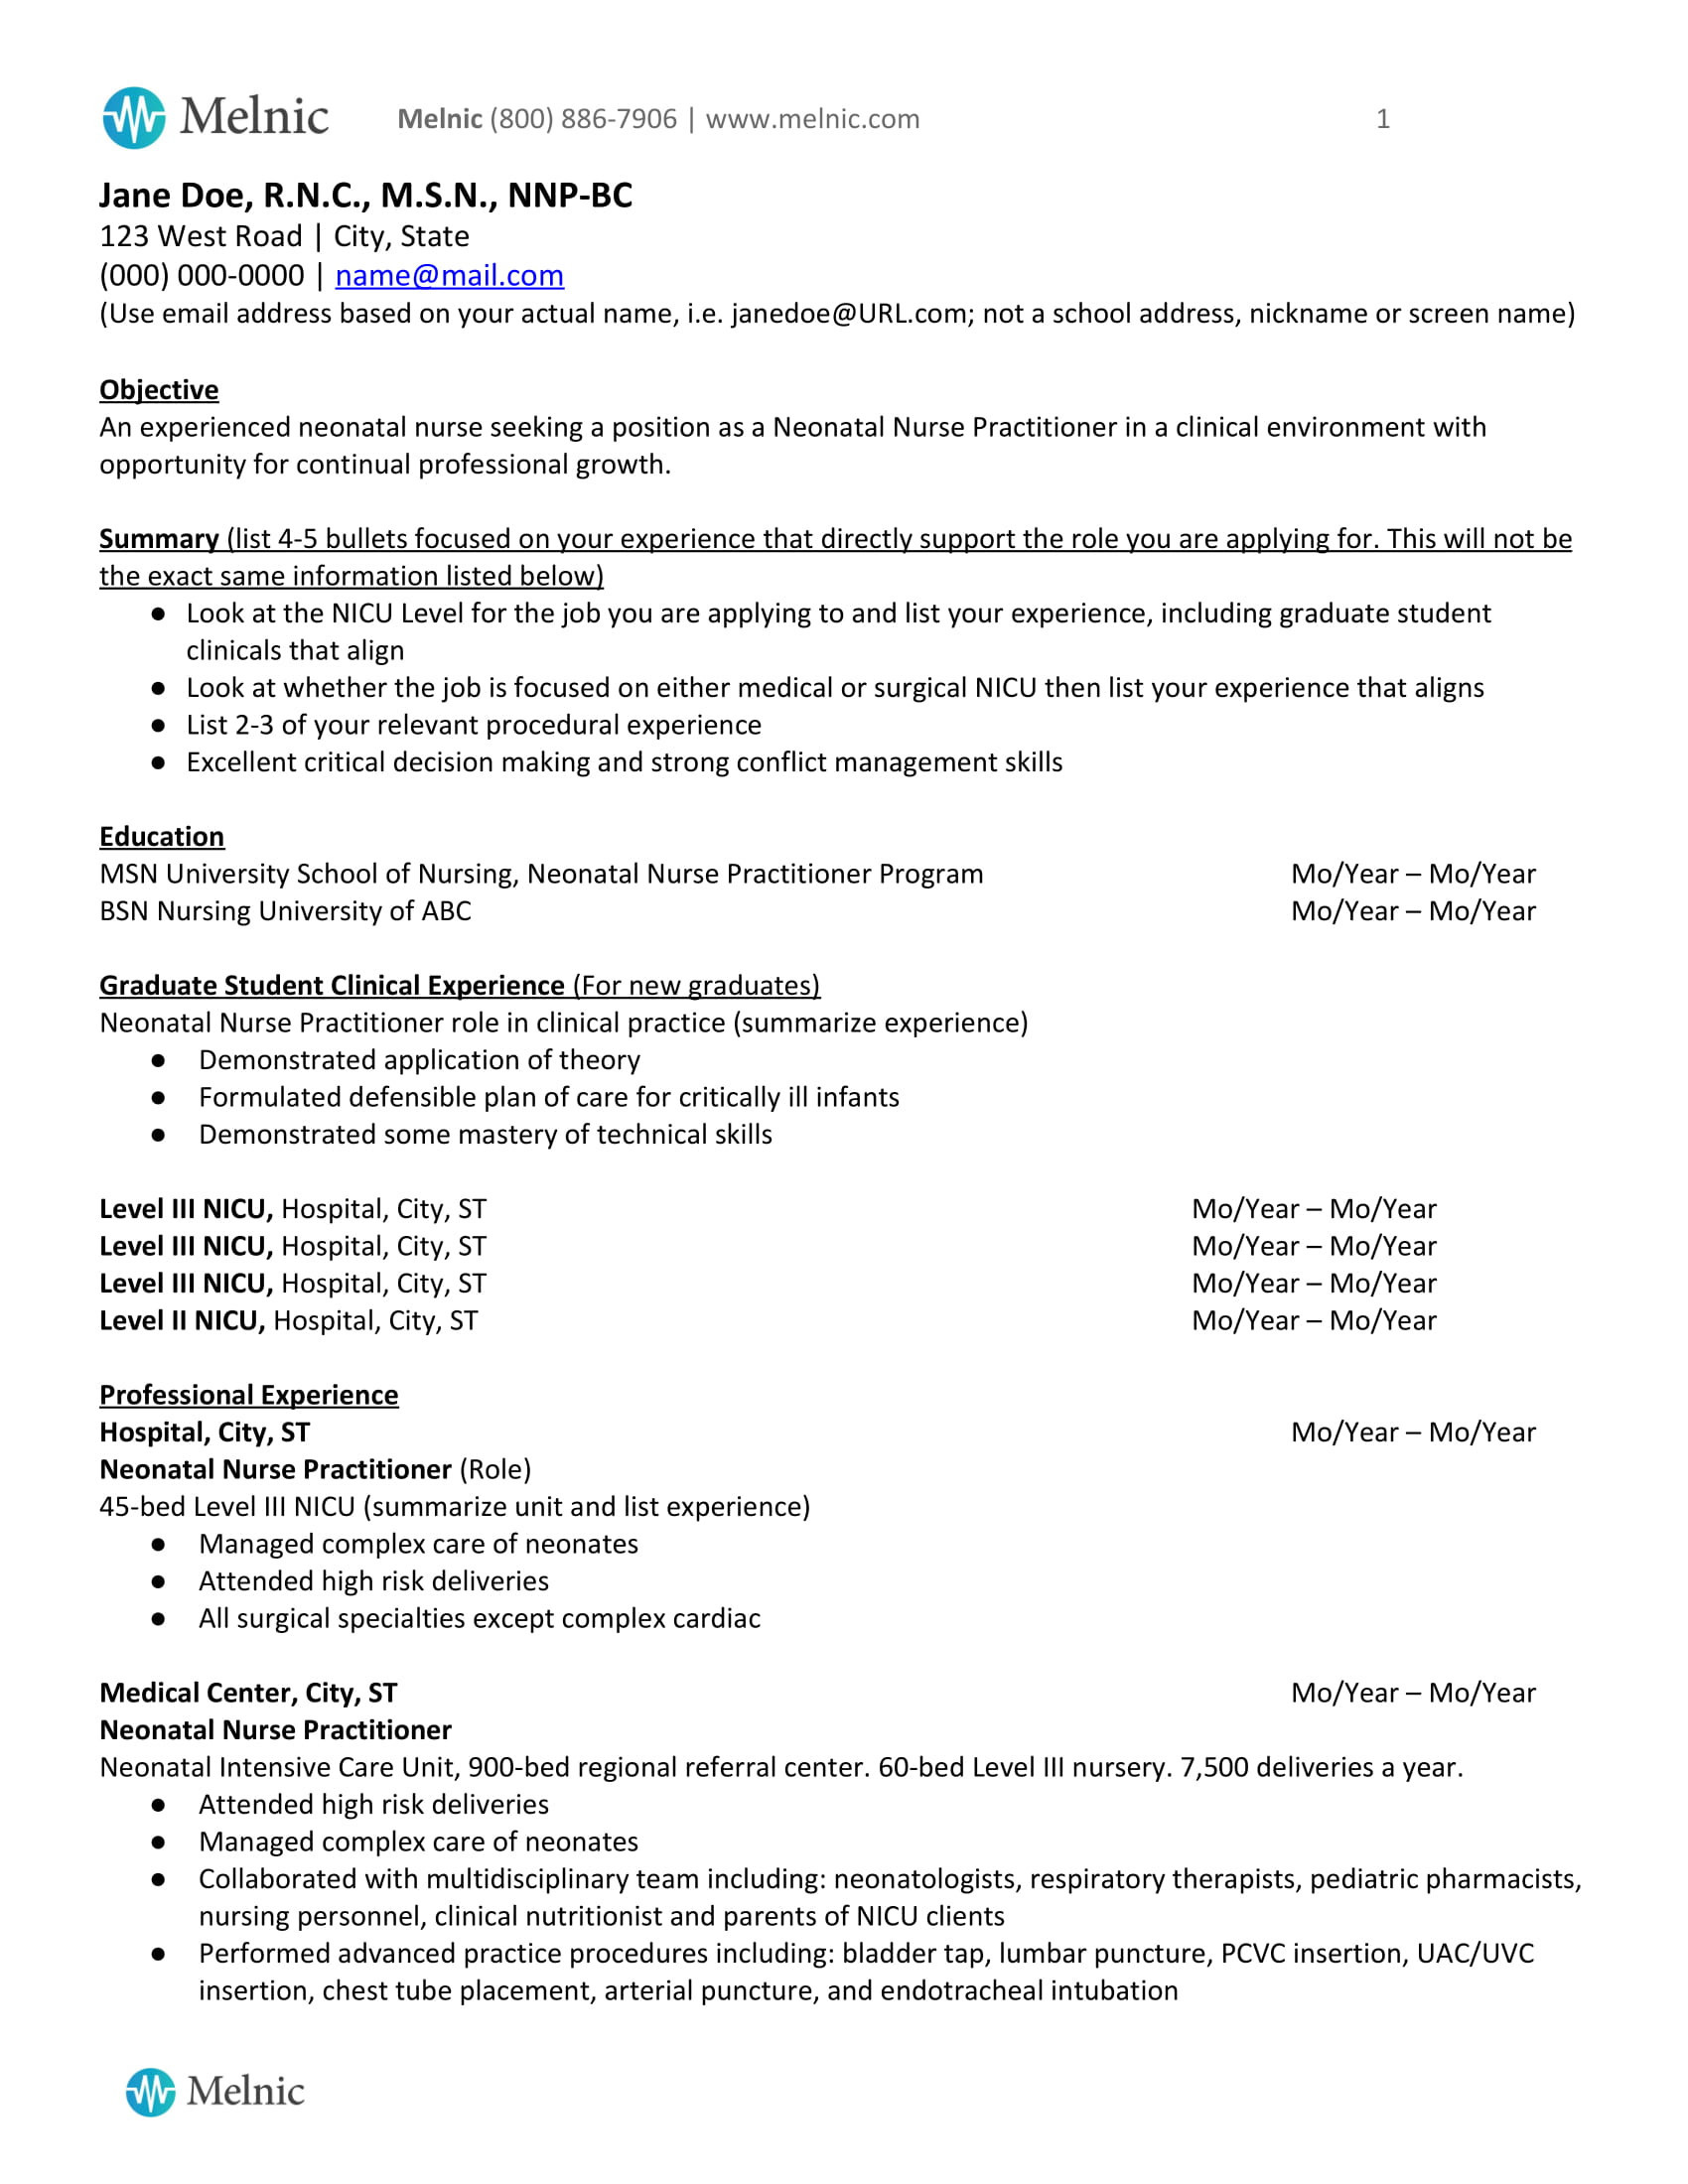 Sample Resume Objectives for Nursing Student Staf Nurse Resume format Doc